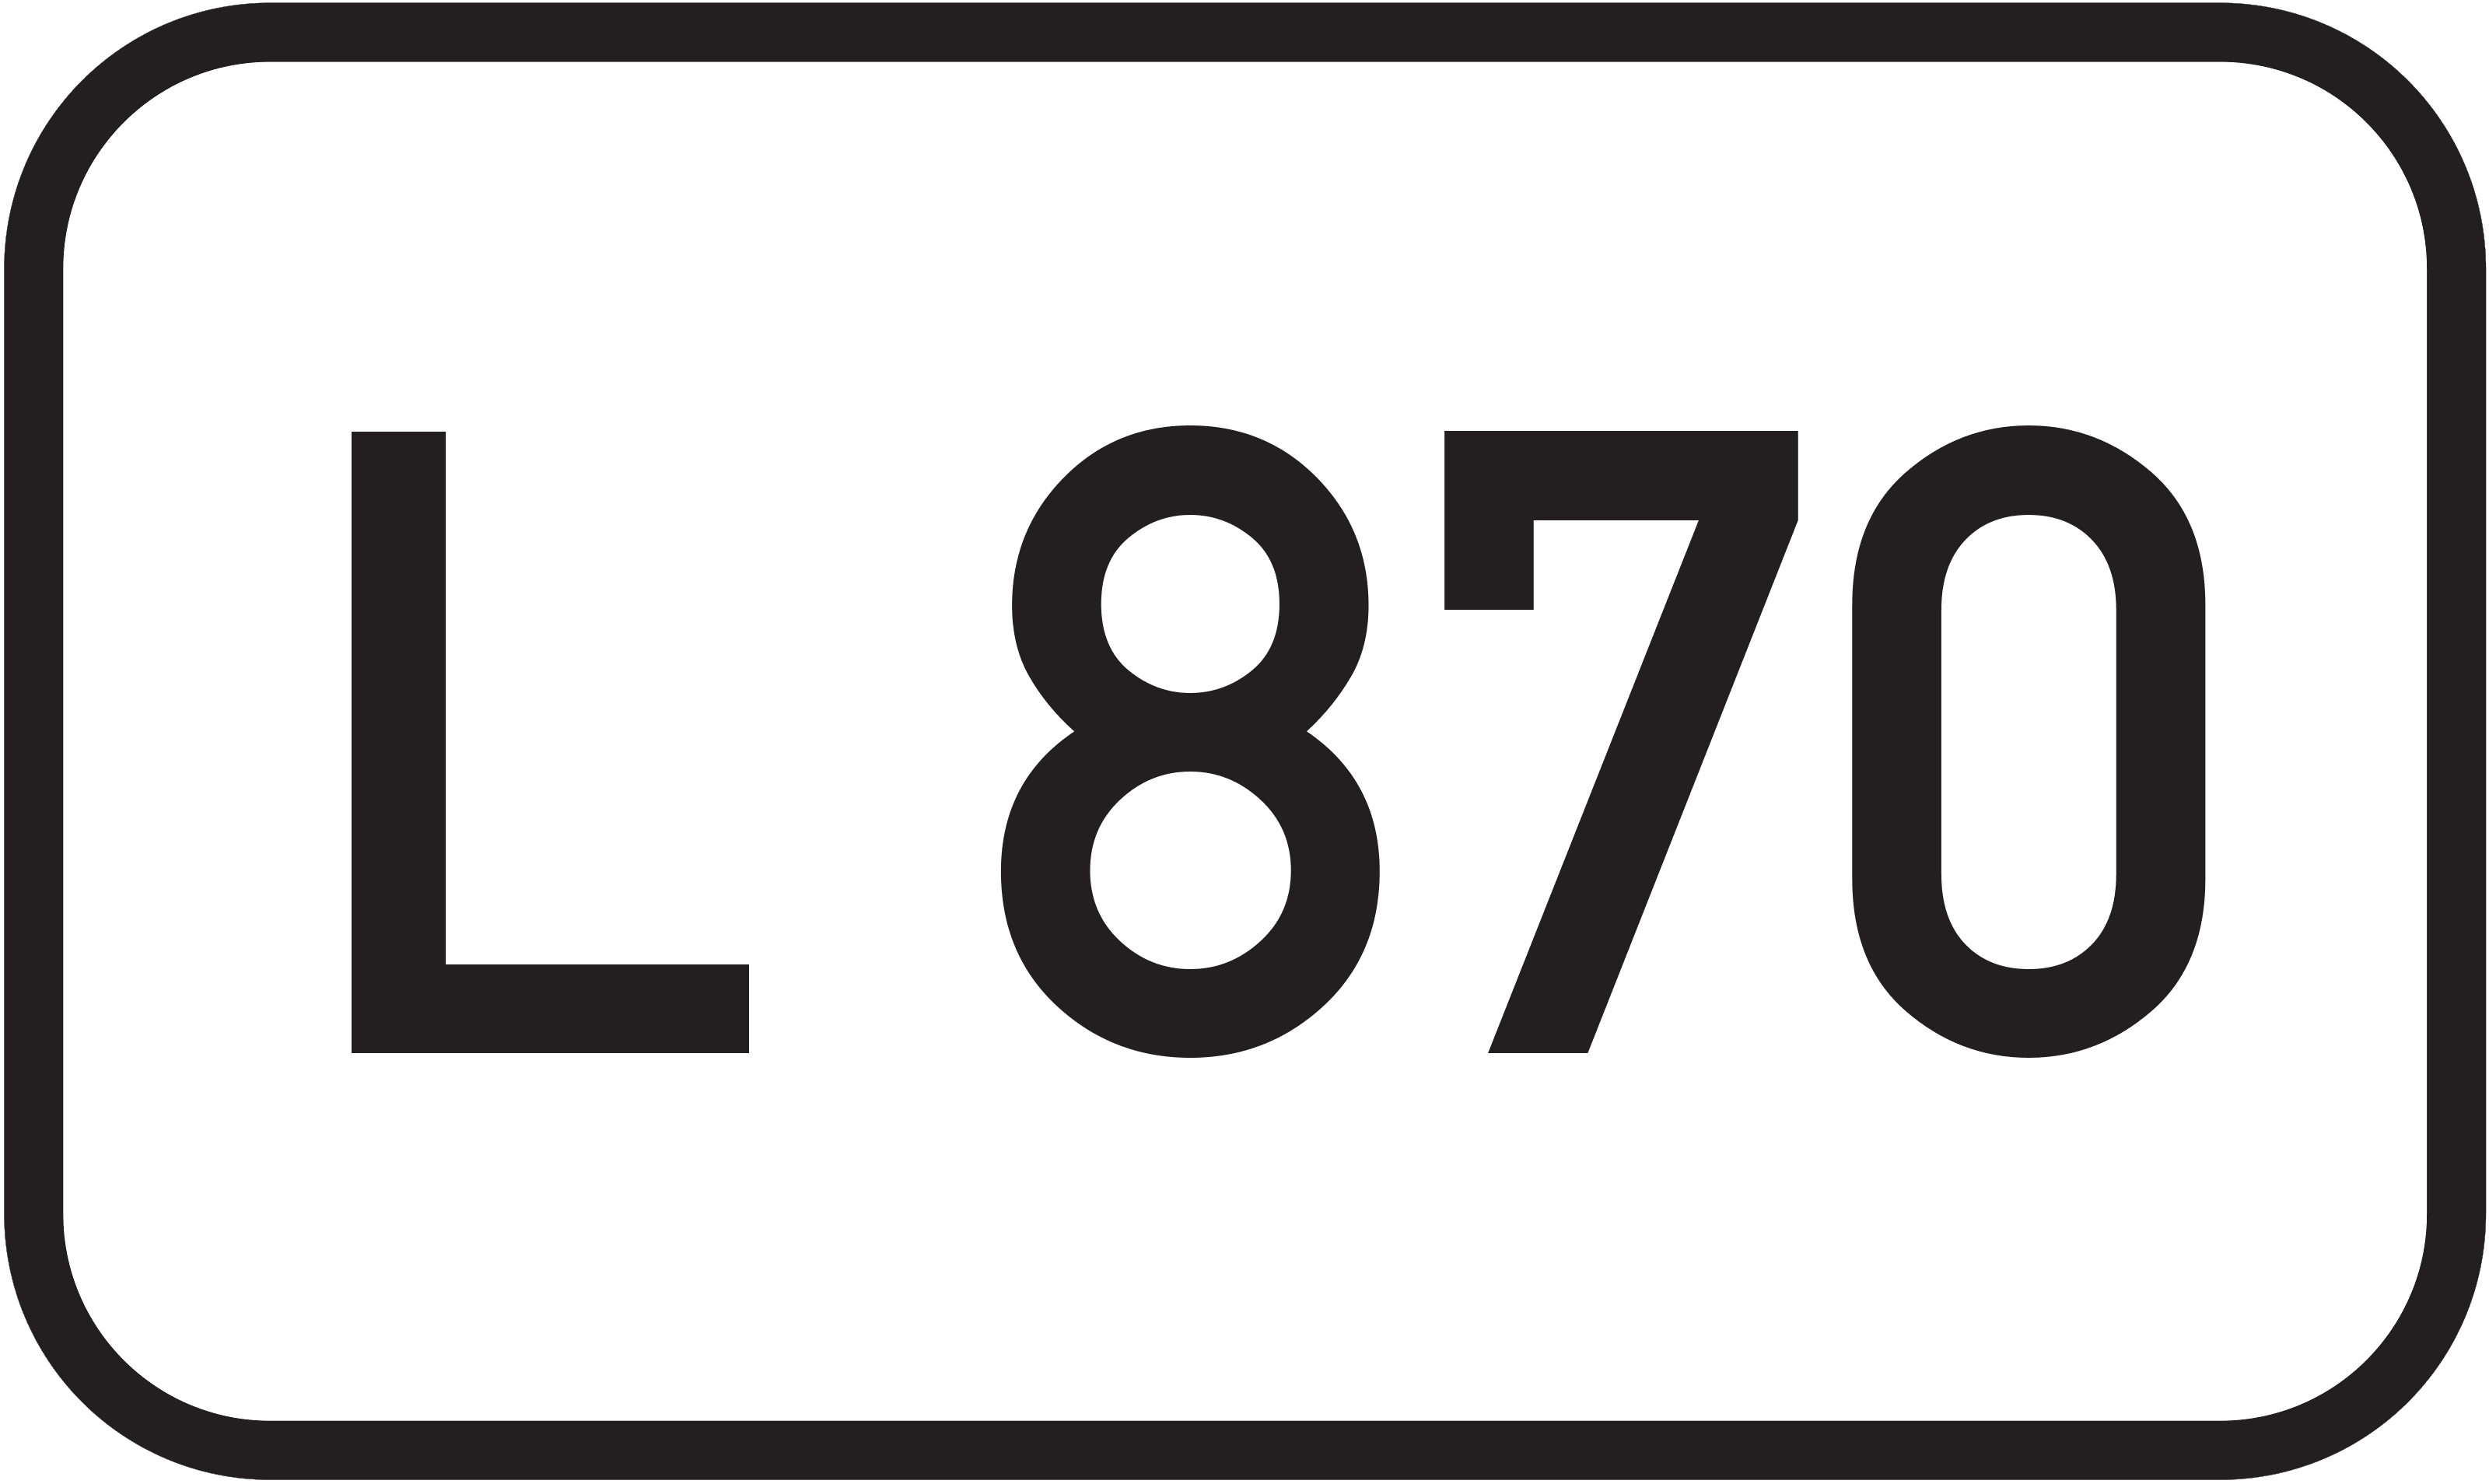 Landesstraße L 870